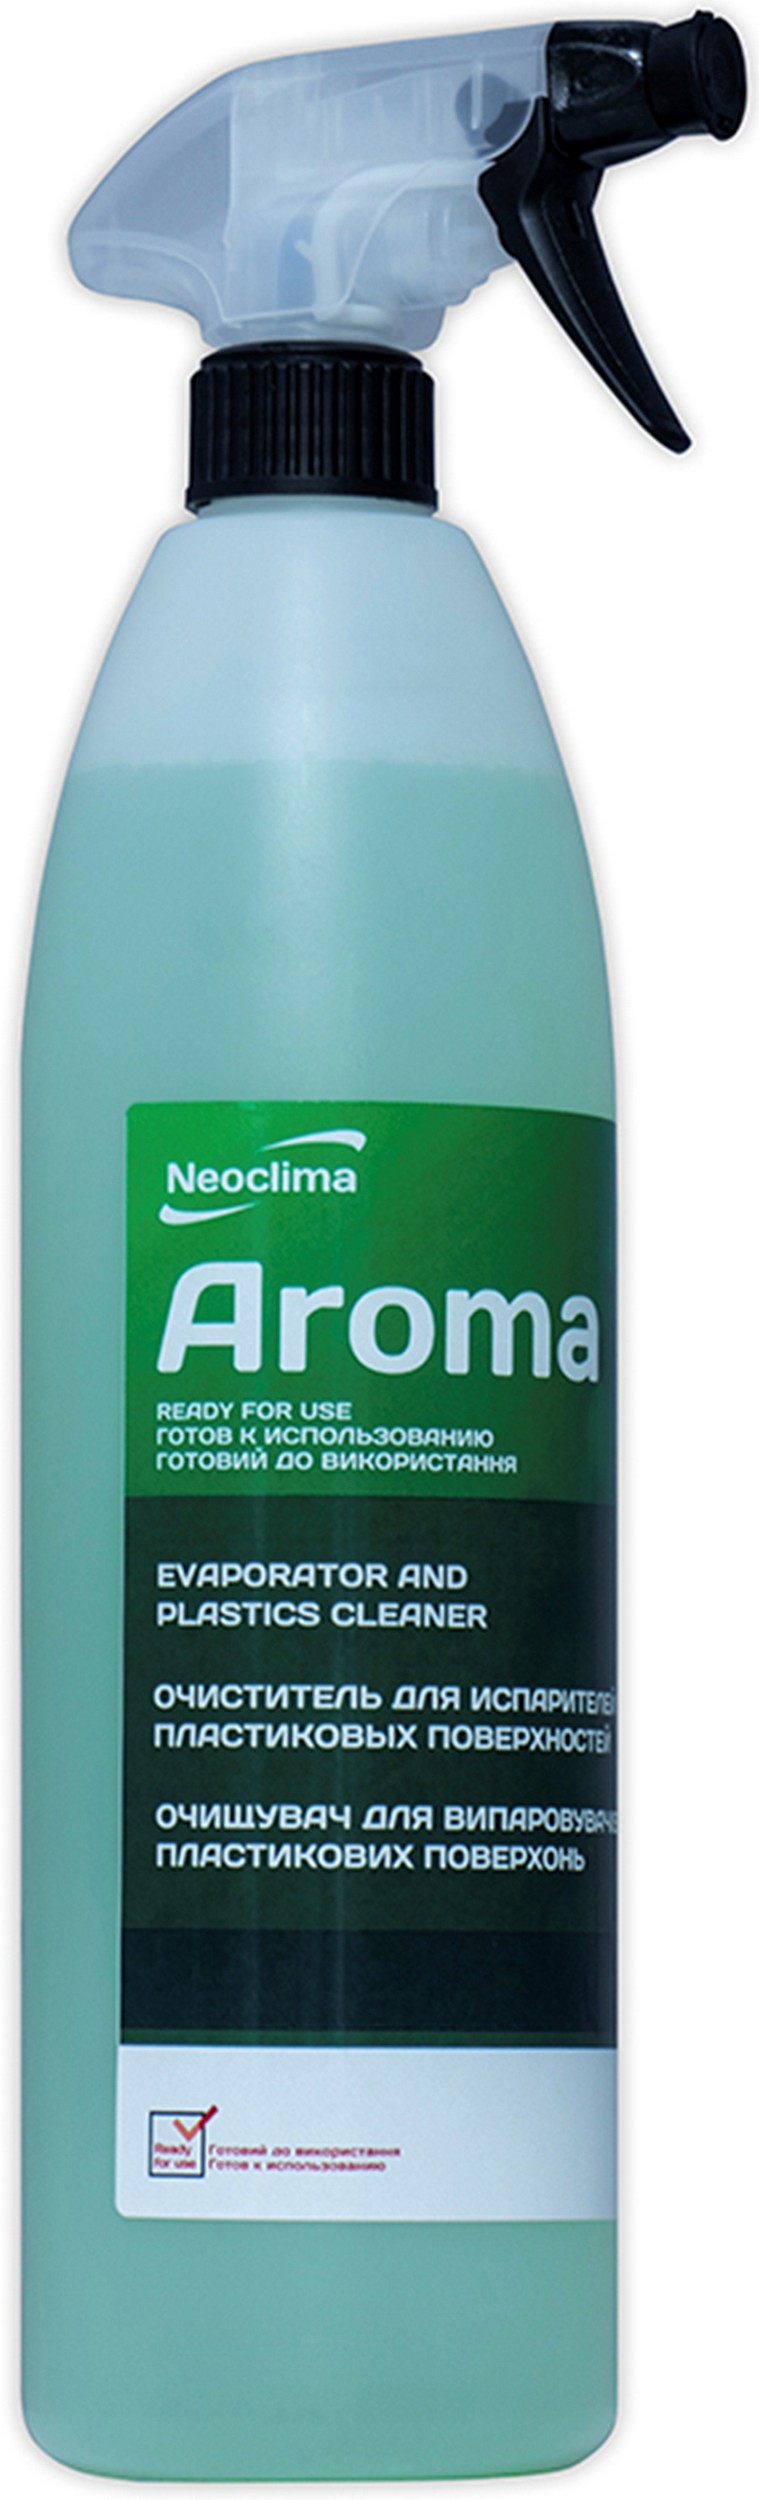 Купити очищувач для кондиціонерів Neoclima Aroma 1 л, спрей в Києві